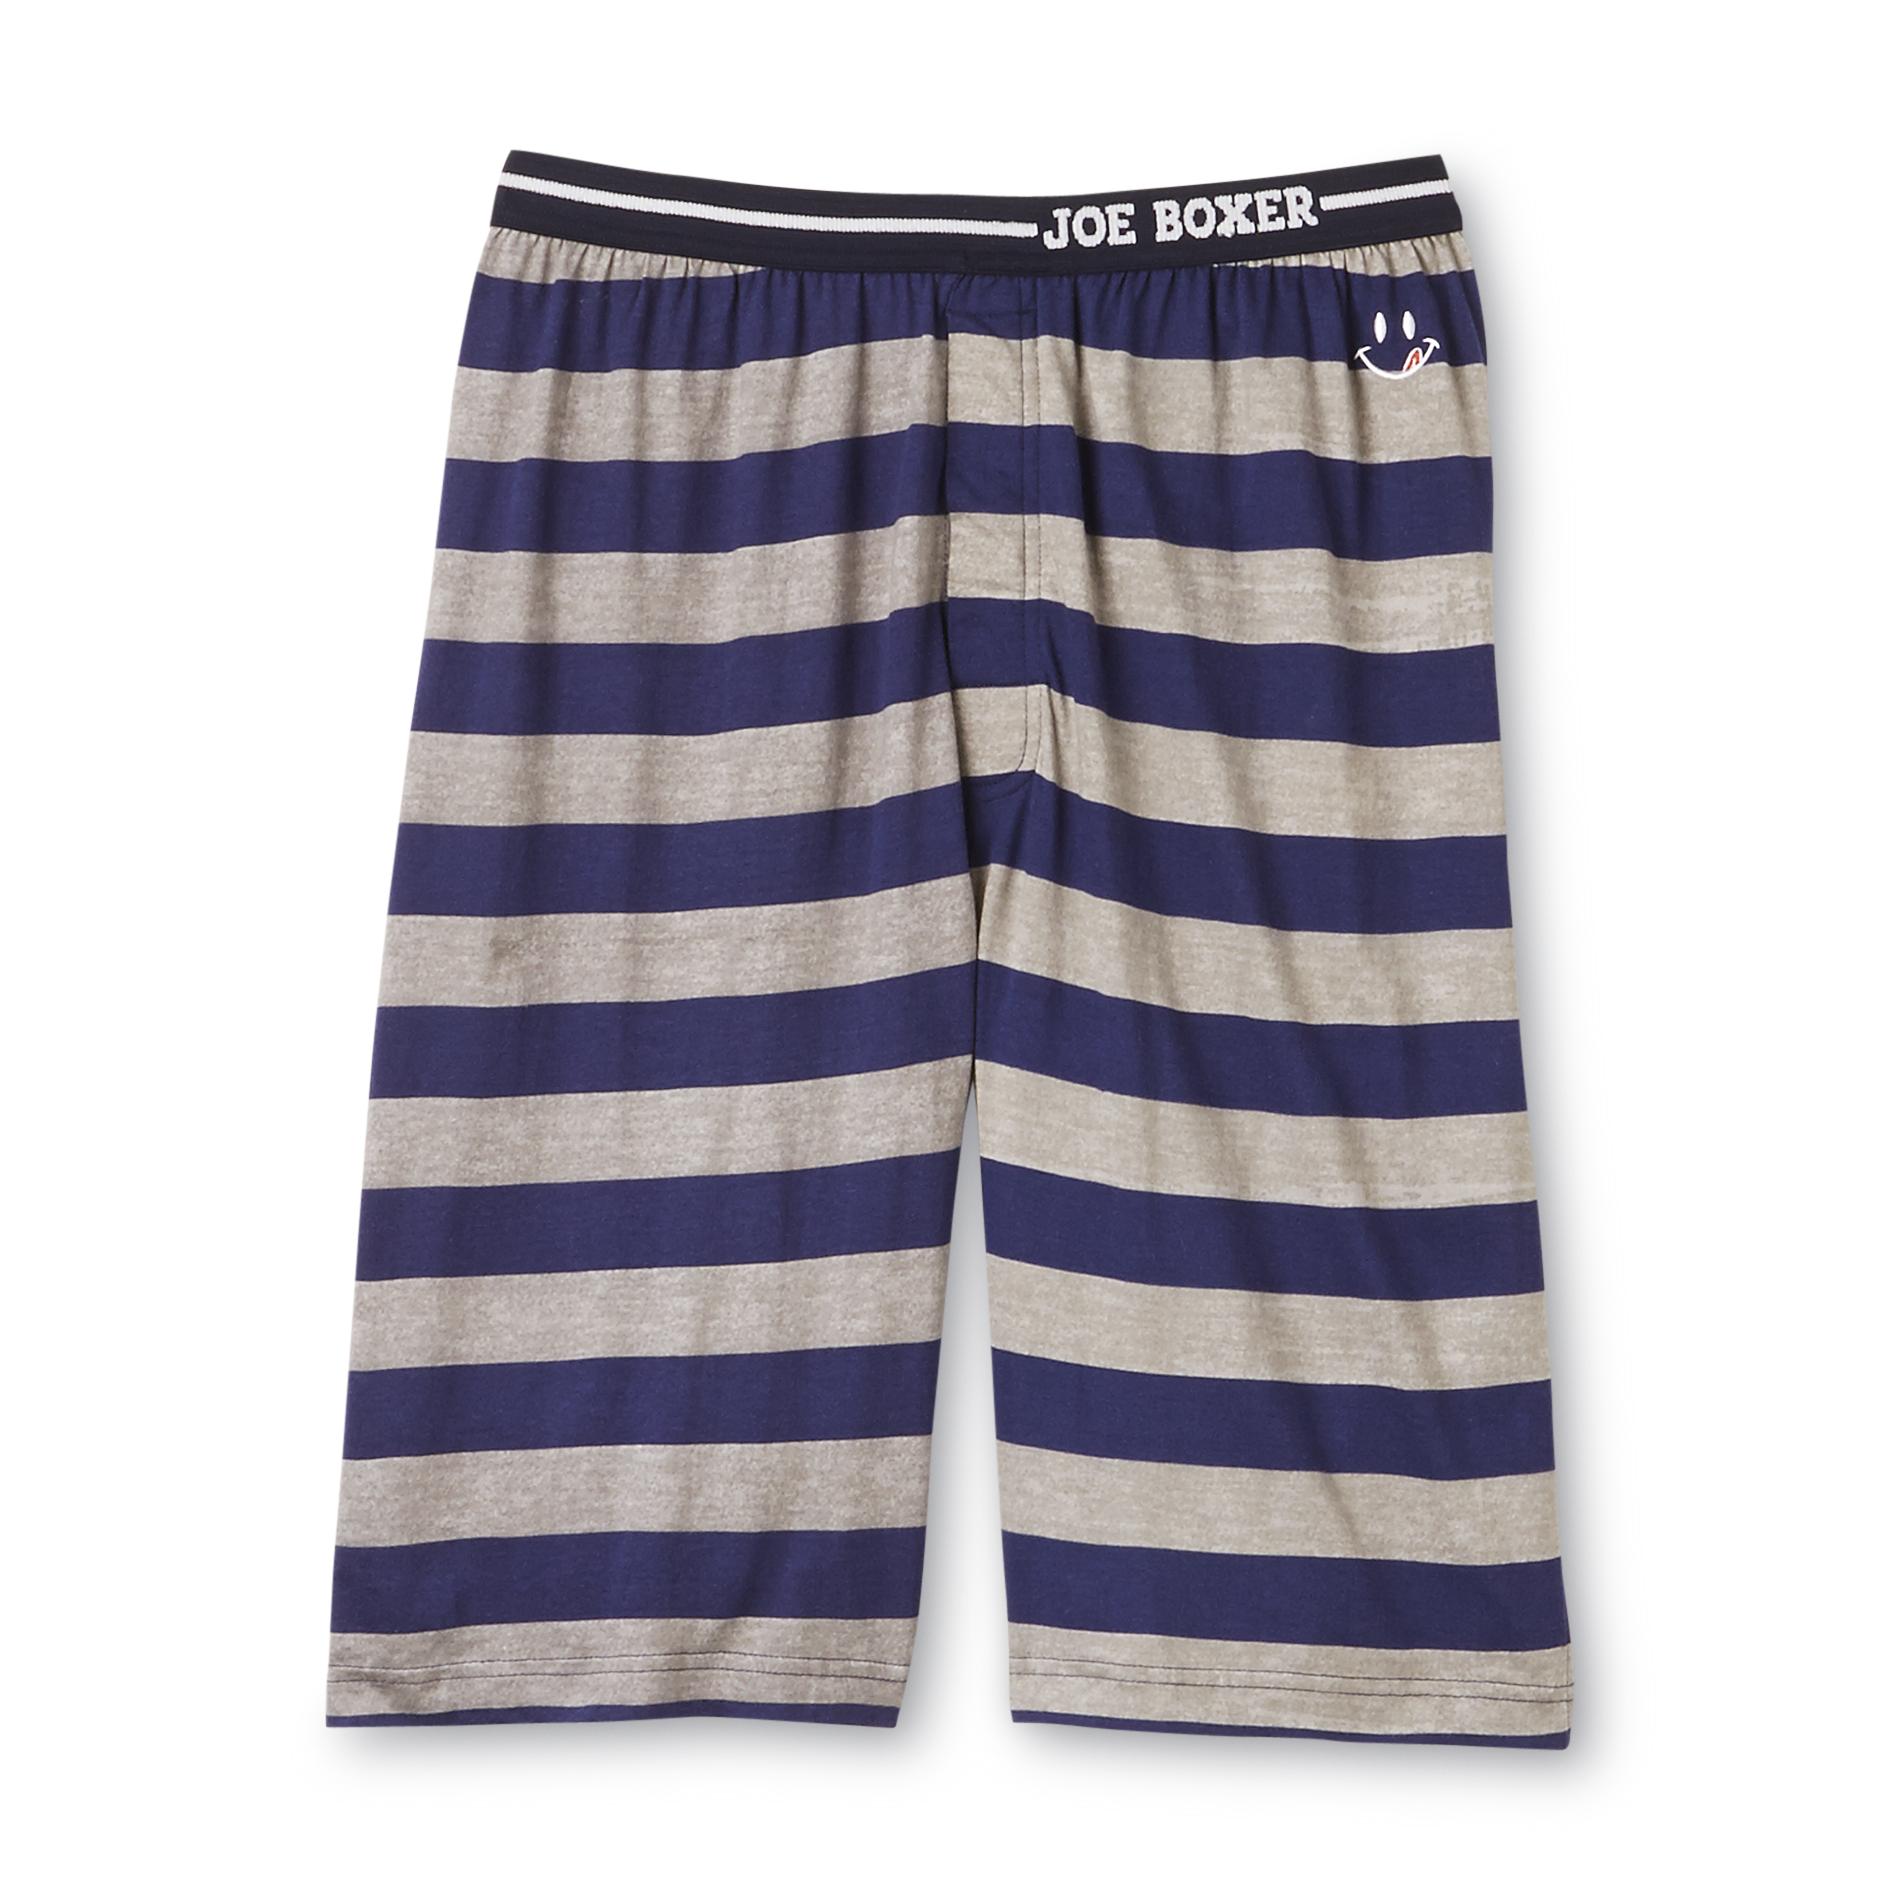 Joe Boxer Men's Jam Shorts - Striped